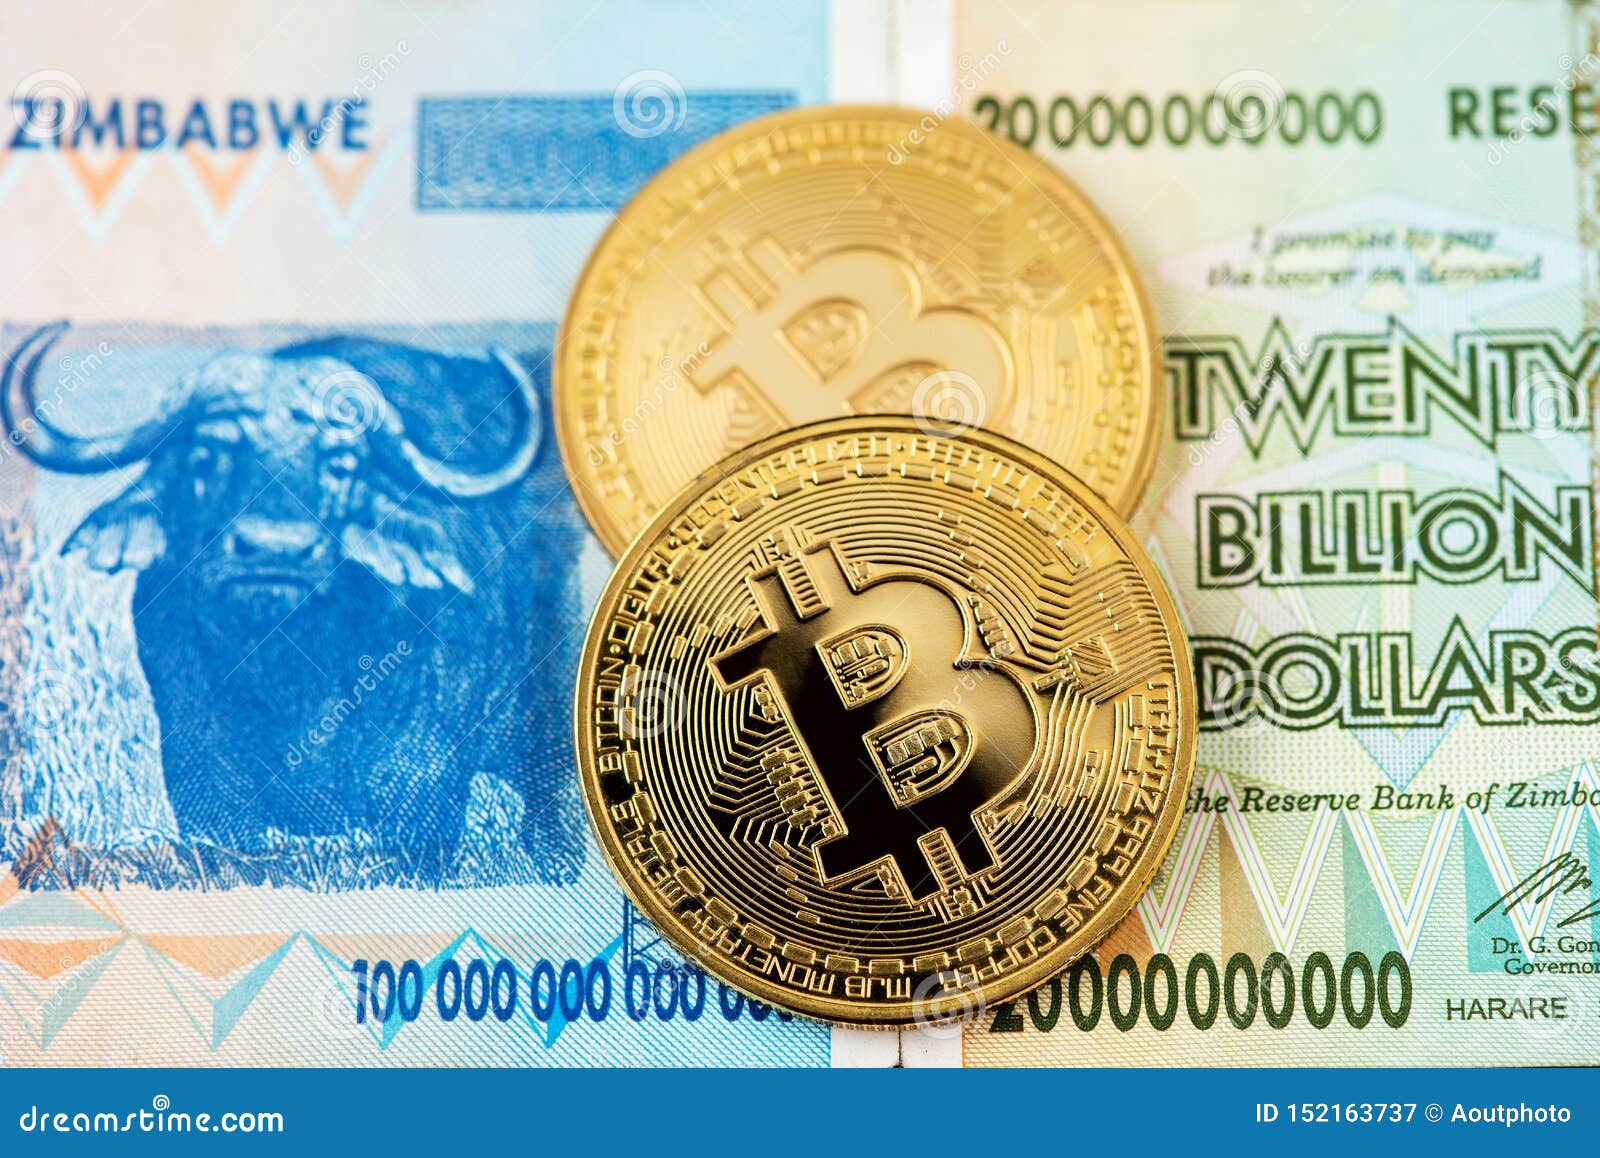 bitcoin zimbabwe